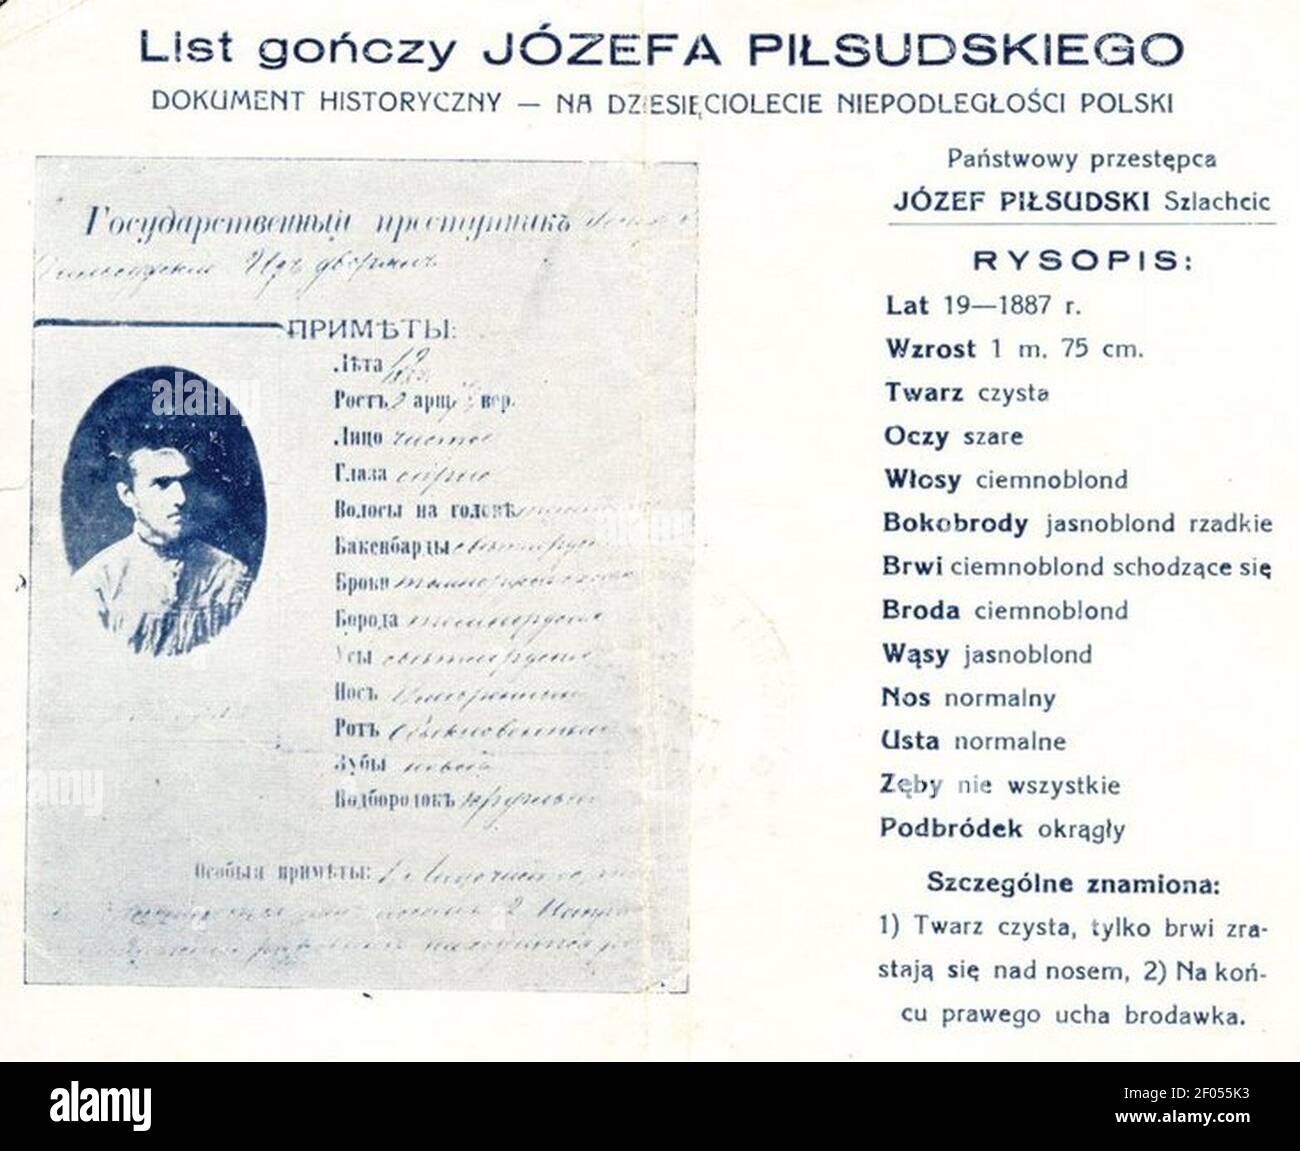 Pilsudski list gonczy Stock Photo - Alamy